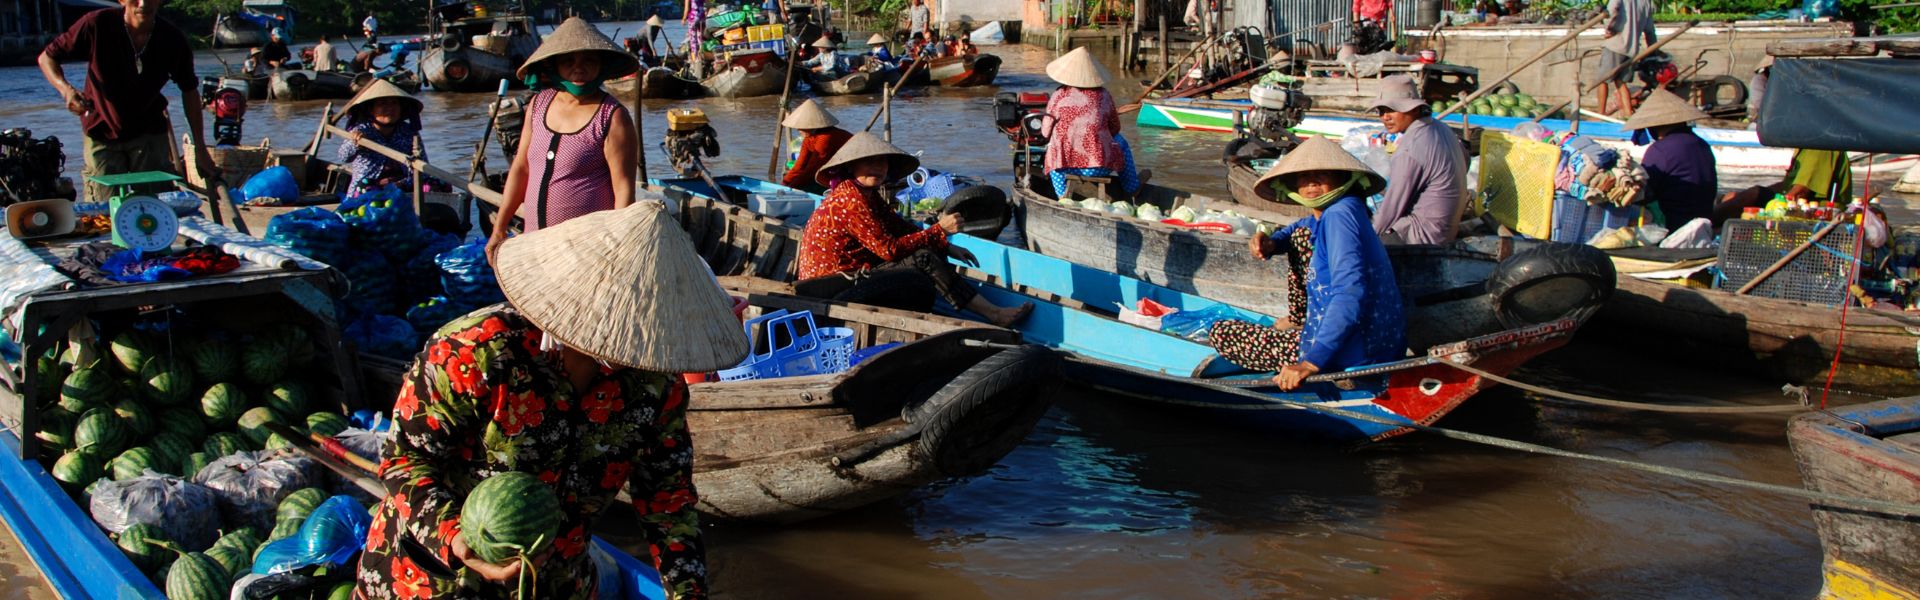 Can Tho - Consejos de viaje | Guía de viajes a Vietnam